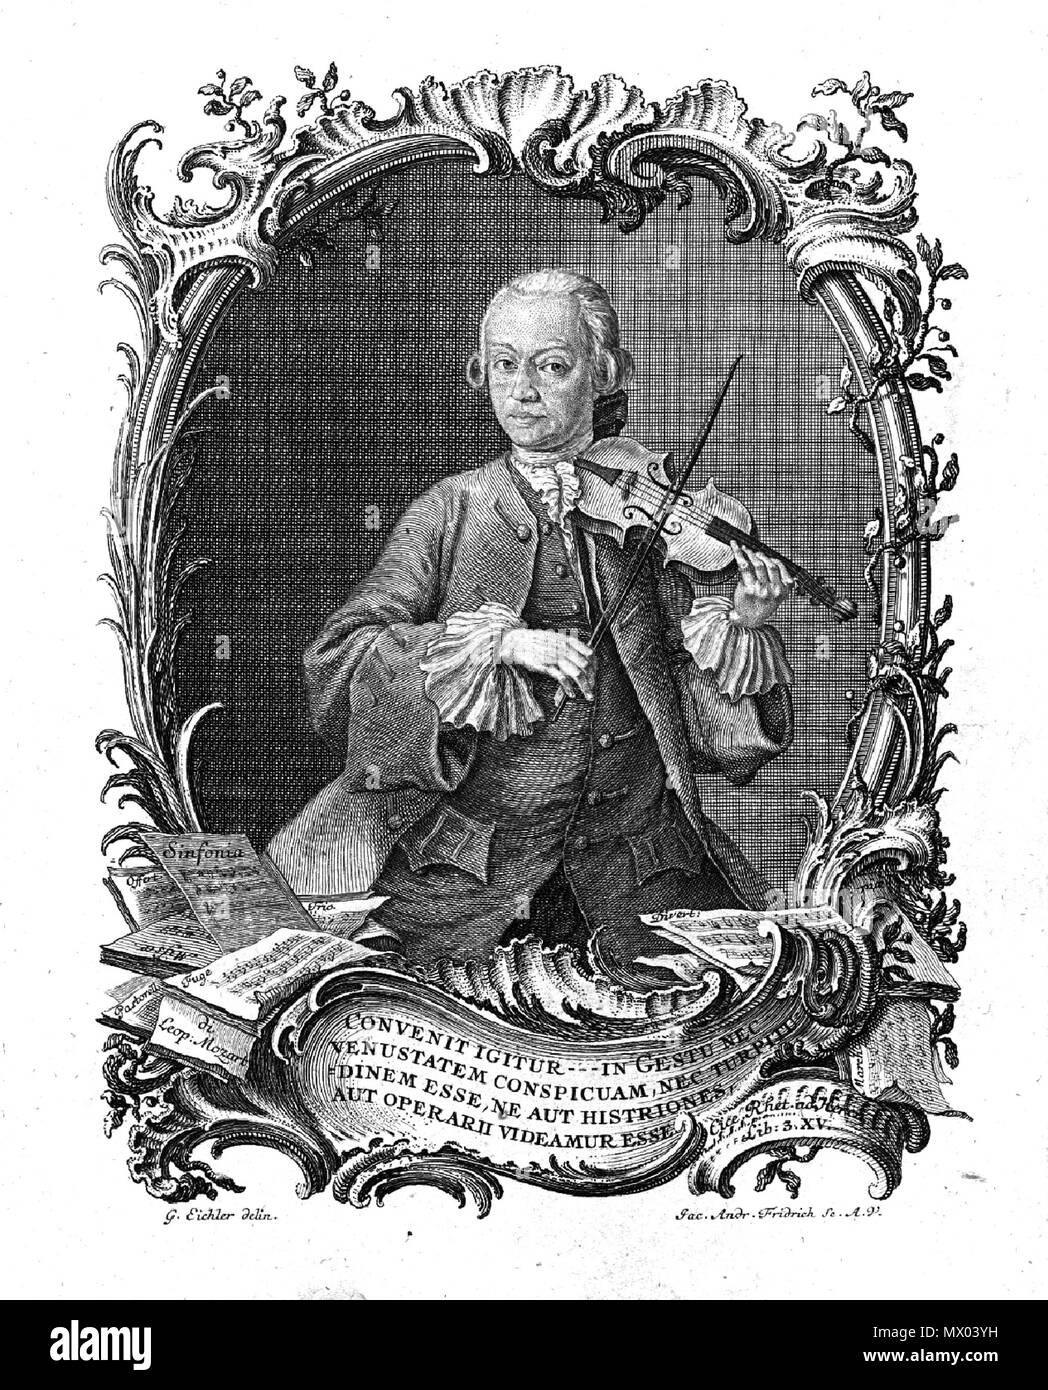 . English: Portrait of Leopold Mozart from his 1756 book Versuch einer Gruendlichen Violinschule . circa 1756. Jac. Andr. Fridrich and G. Eichler 368 LeopoldMozartPortraitFromViolinschule Stock Photo